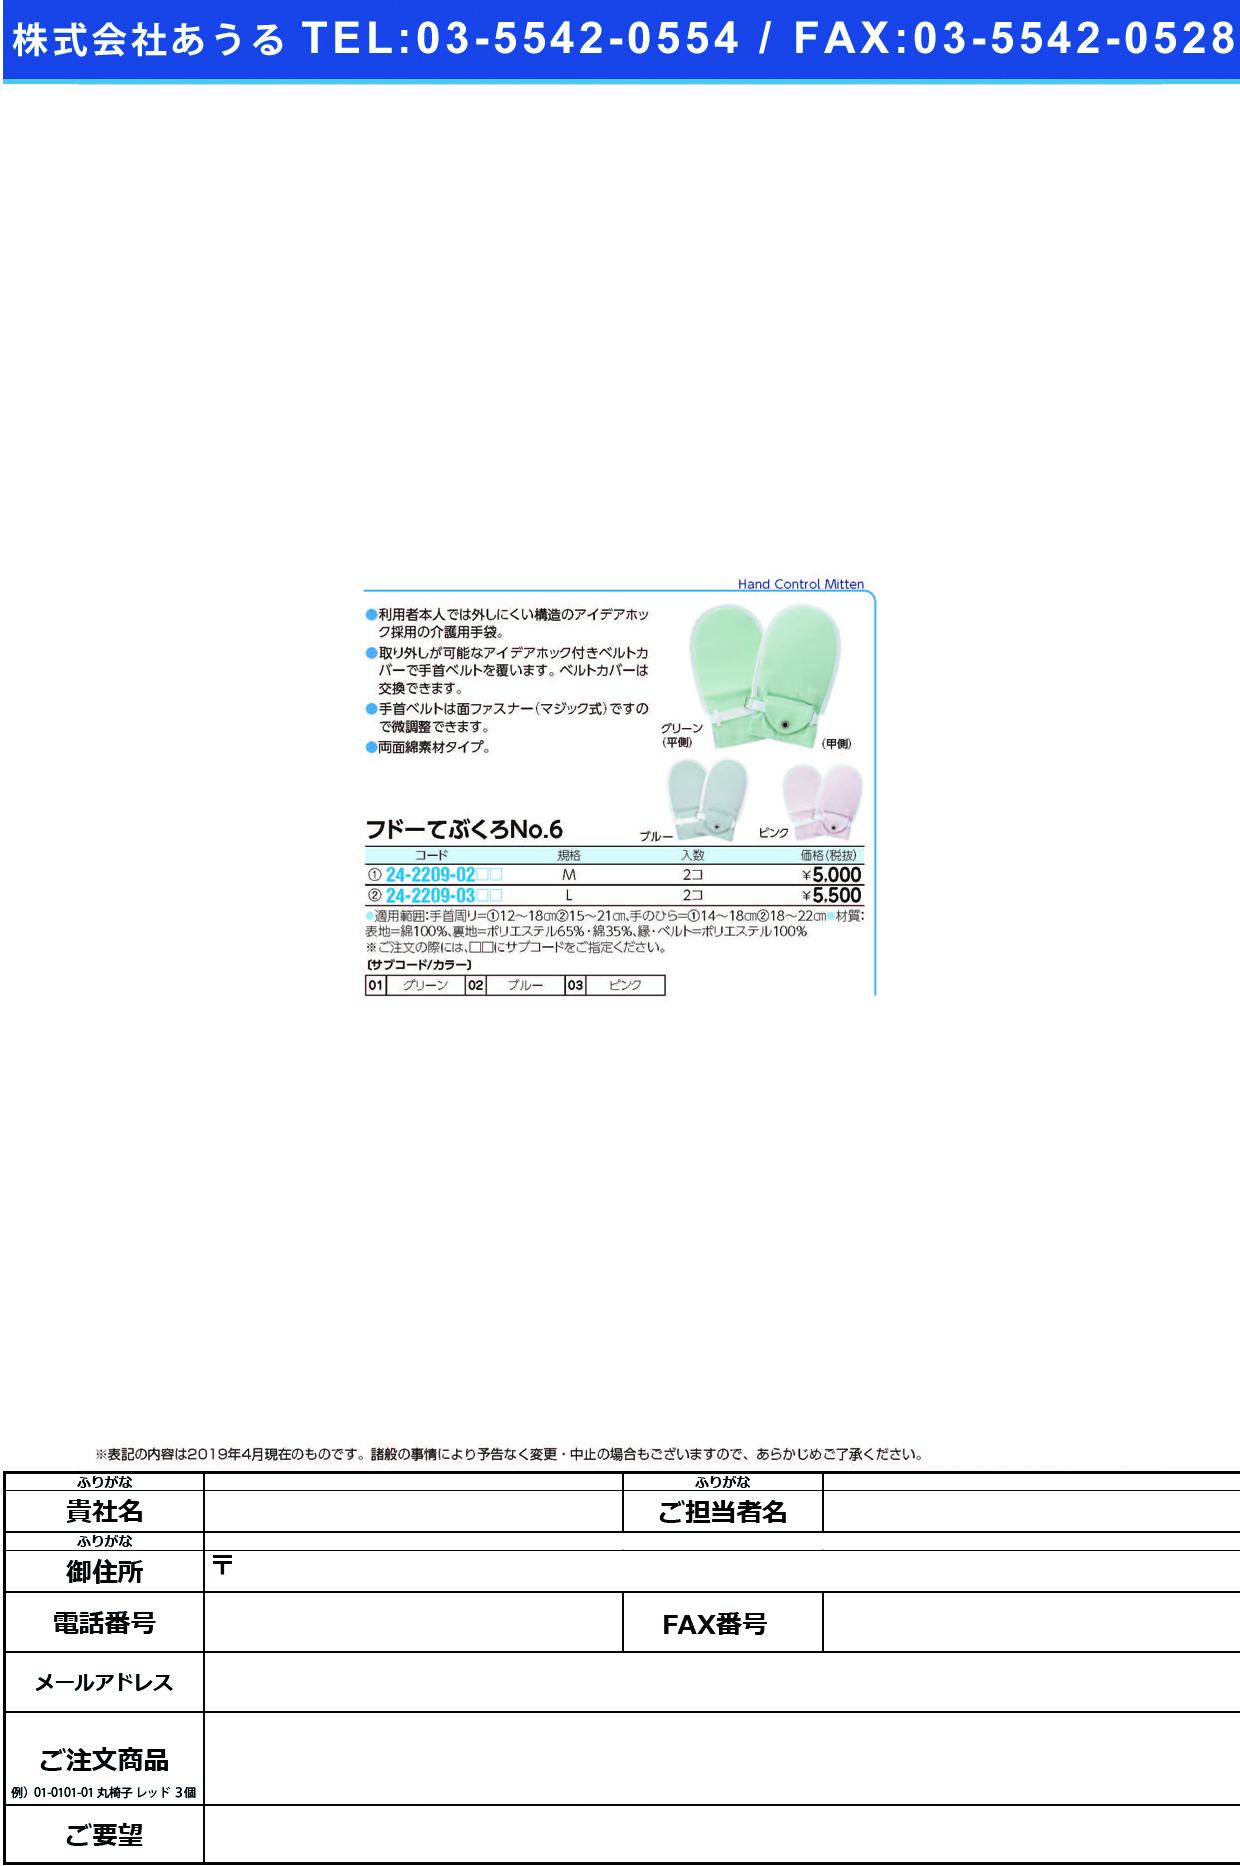 (24-2209-02)フドーてぶくろＮｏ．６ M(2ﾏｲｲﾘ) ﾌﾄﾞｰﾃﾌﾞｸﾛNO6 グリーン【1双単位】【2019年カタログ商品】